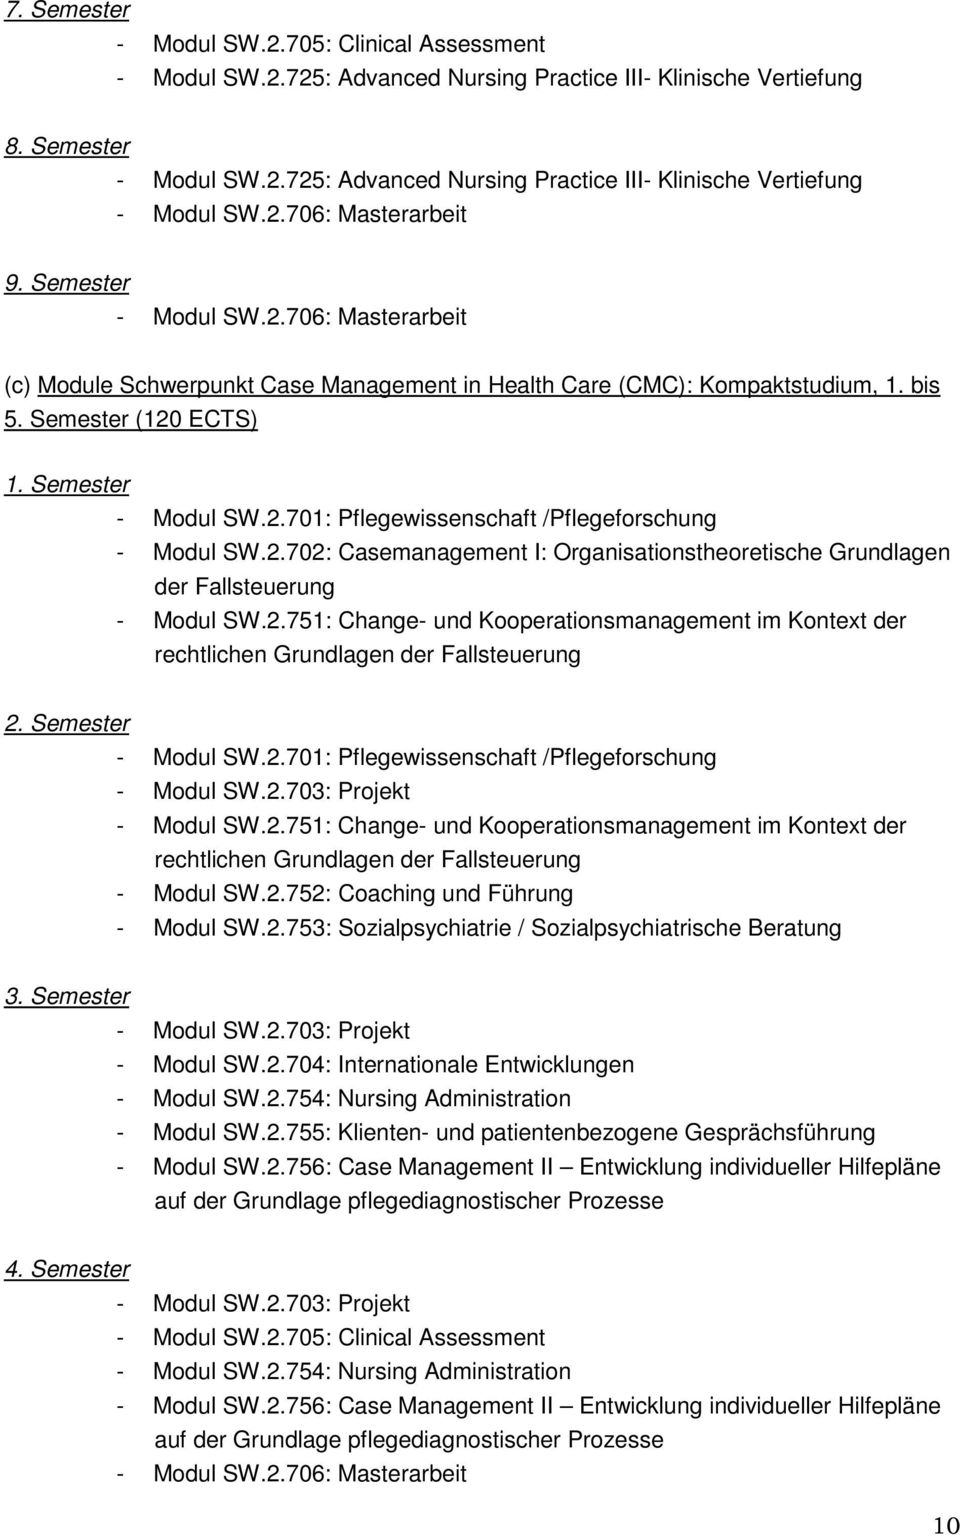 2.702: Casemanagement I: Organisationstheoretische Grundlagen der Fallsteuerung - Modul SW.2.751: Change- und Kooperationsmanagement im Kontext der rechtlichen Grundlagen der Fallsteuerung 2.